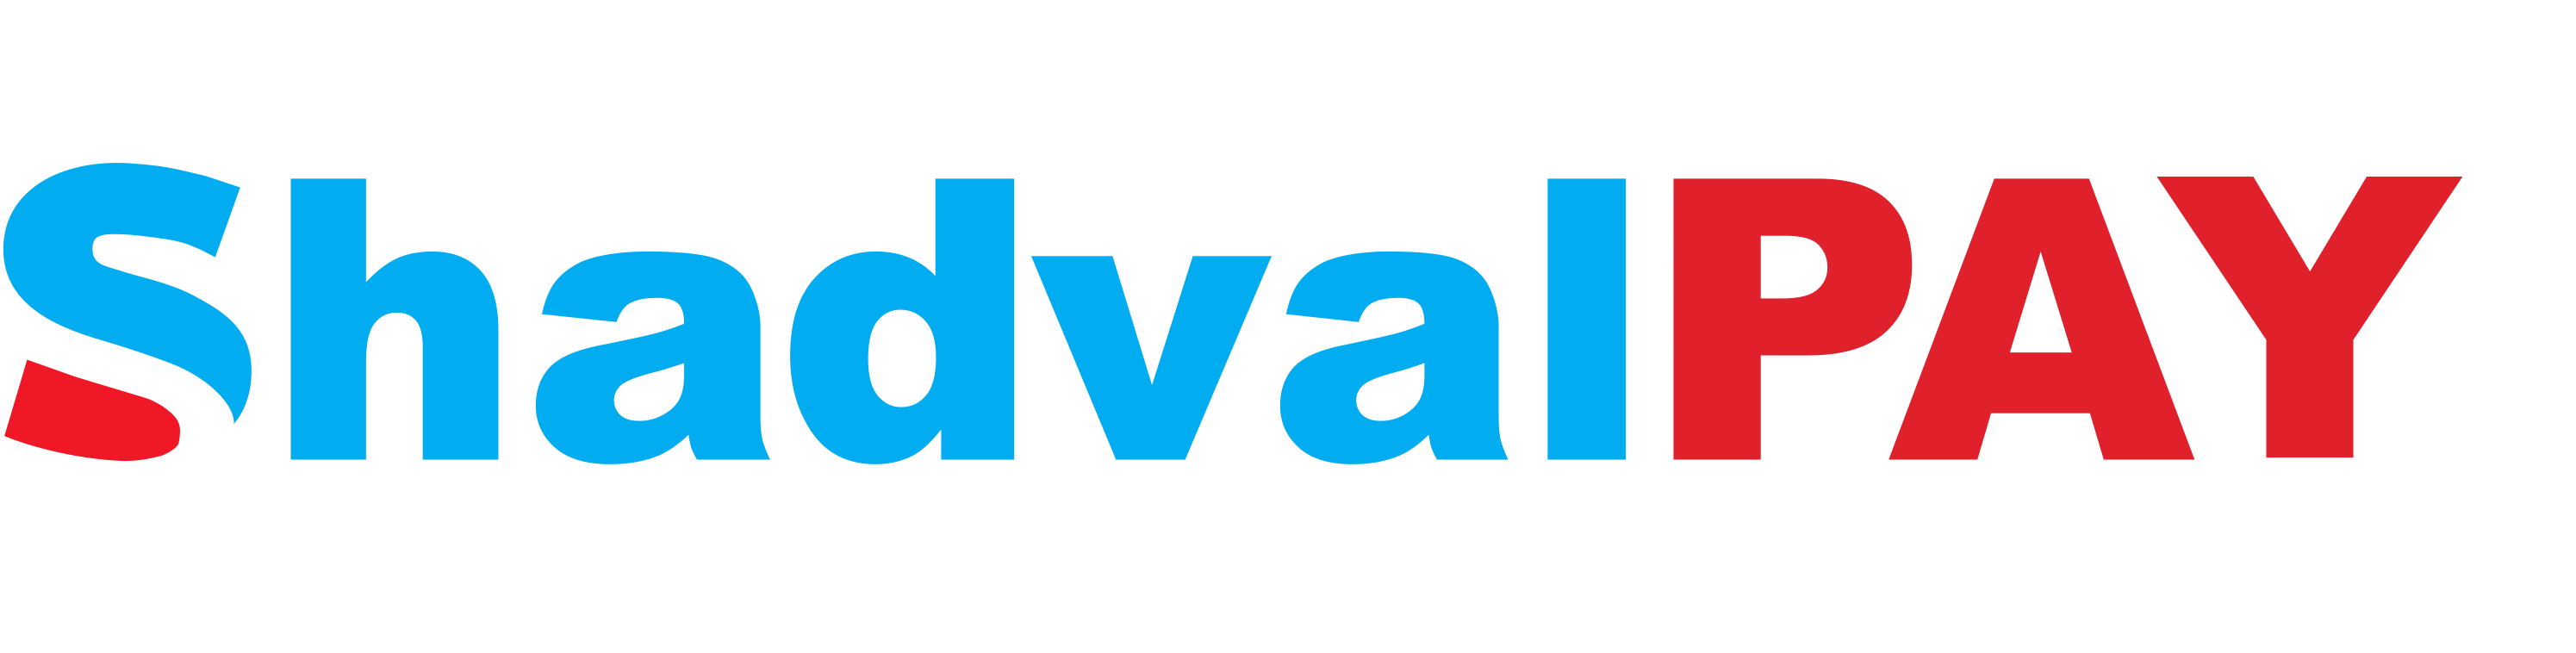 Shadval logo